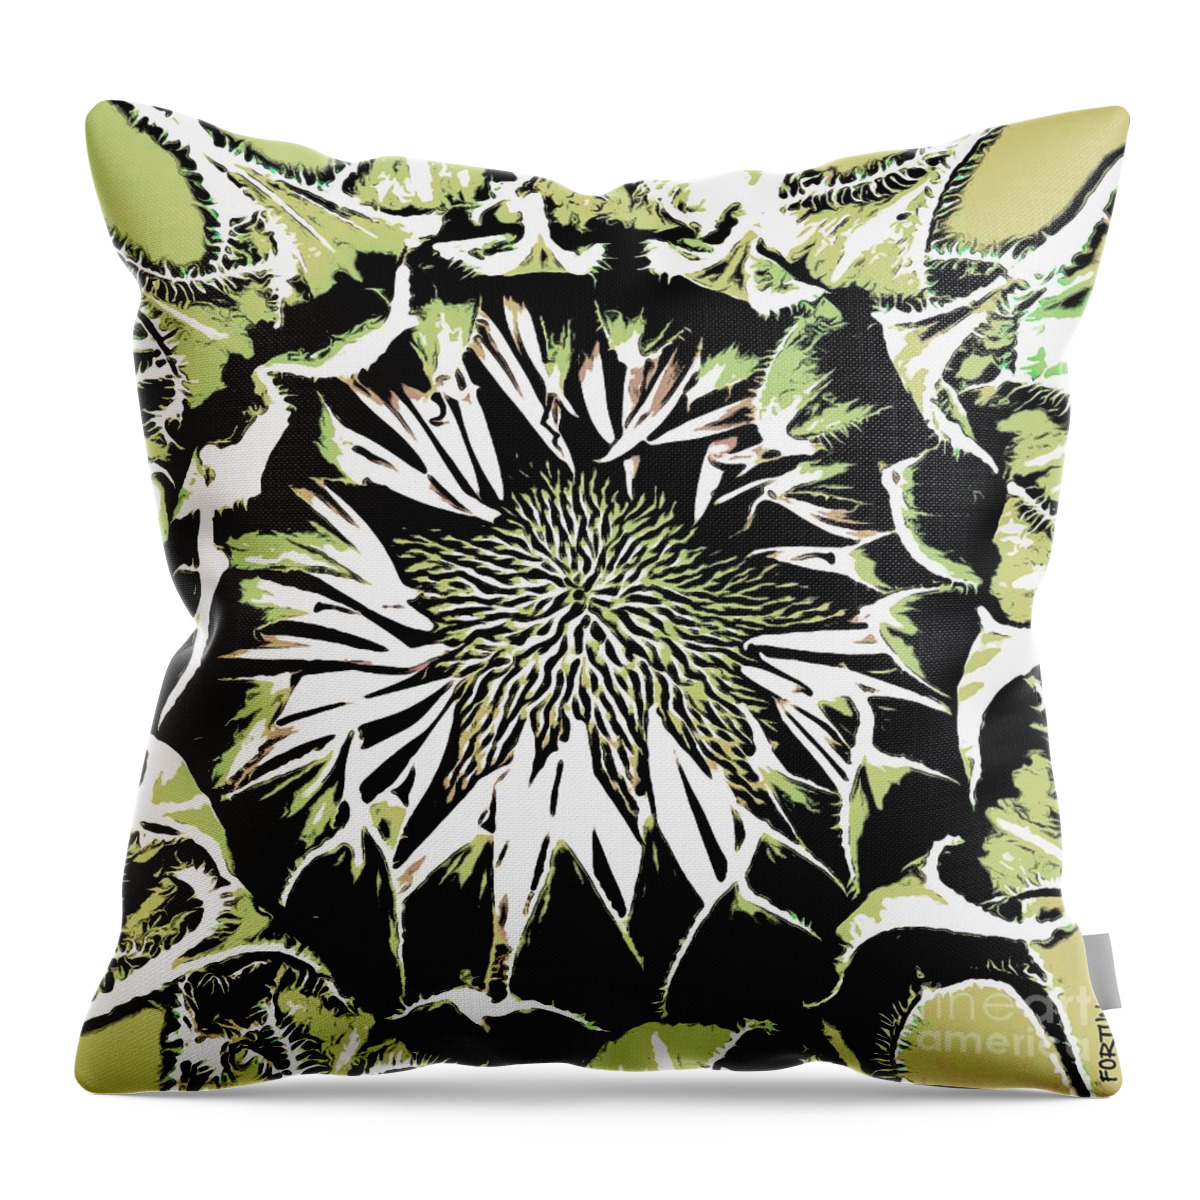 Sunflower Throw Pillow featuring the digital art Sunflower1 by Dragica Micki Fortuna